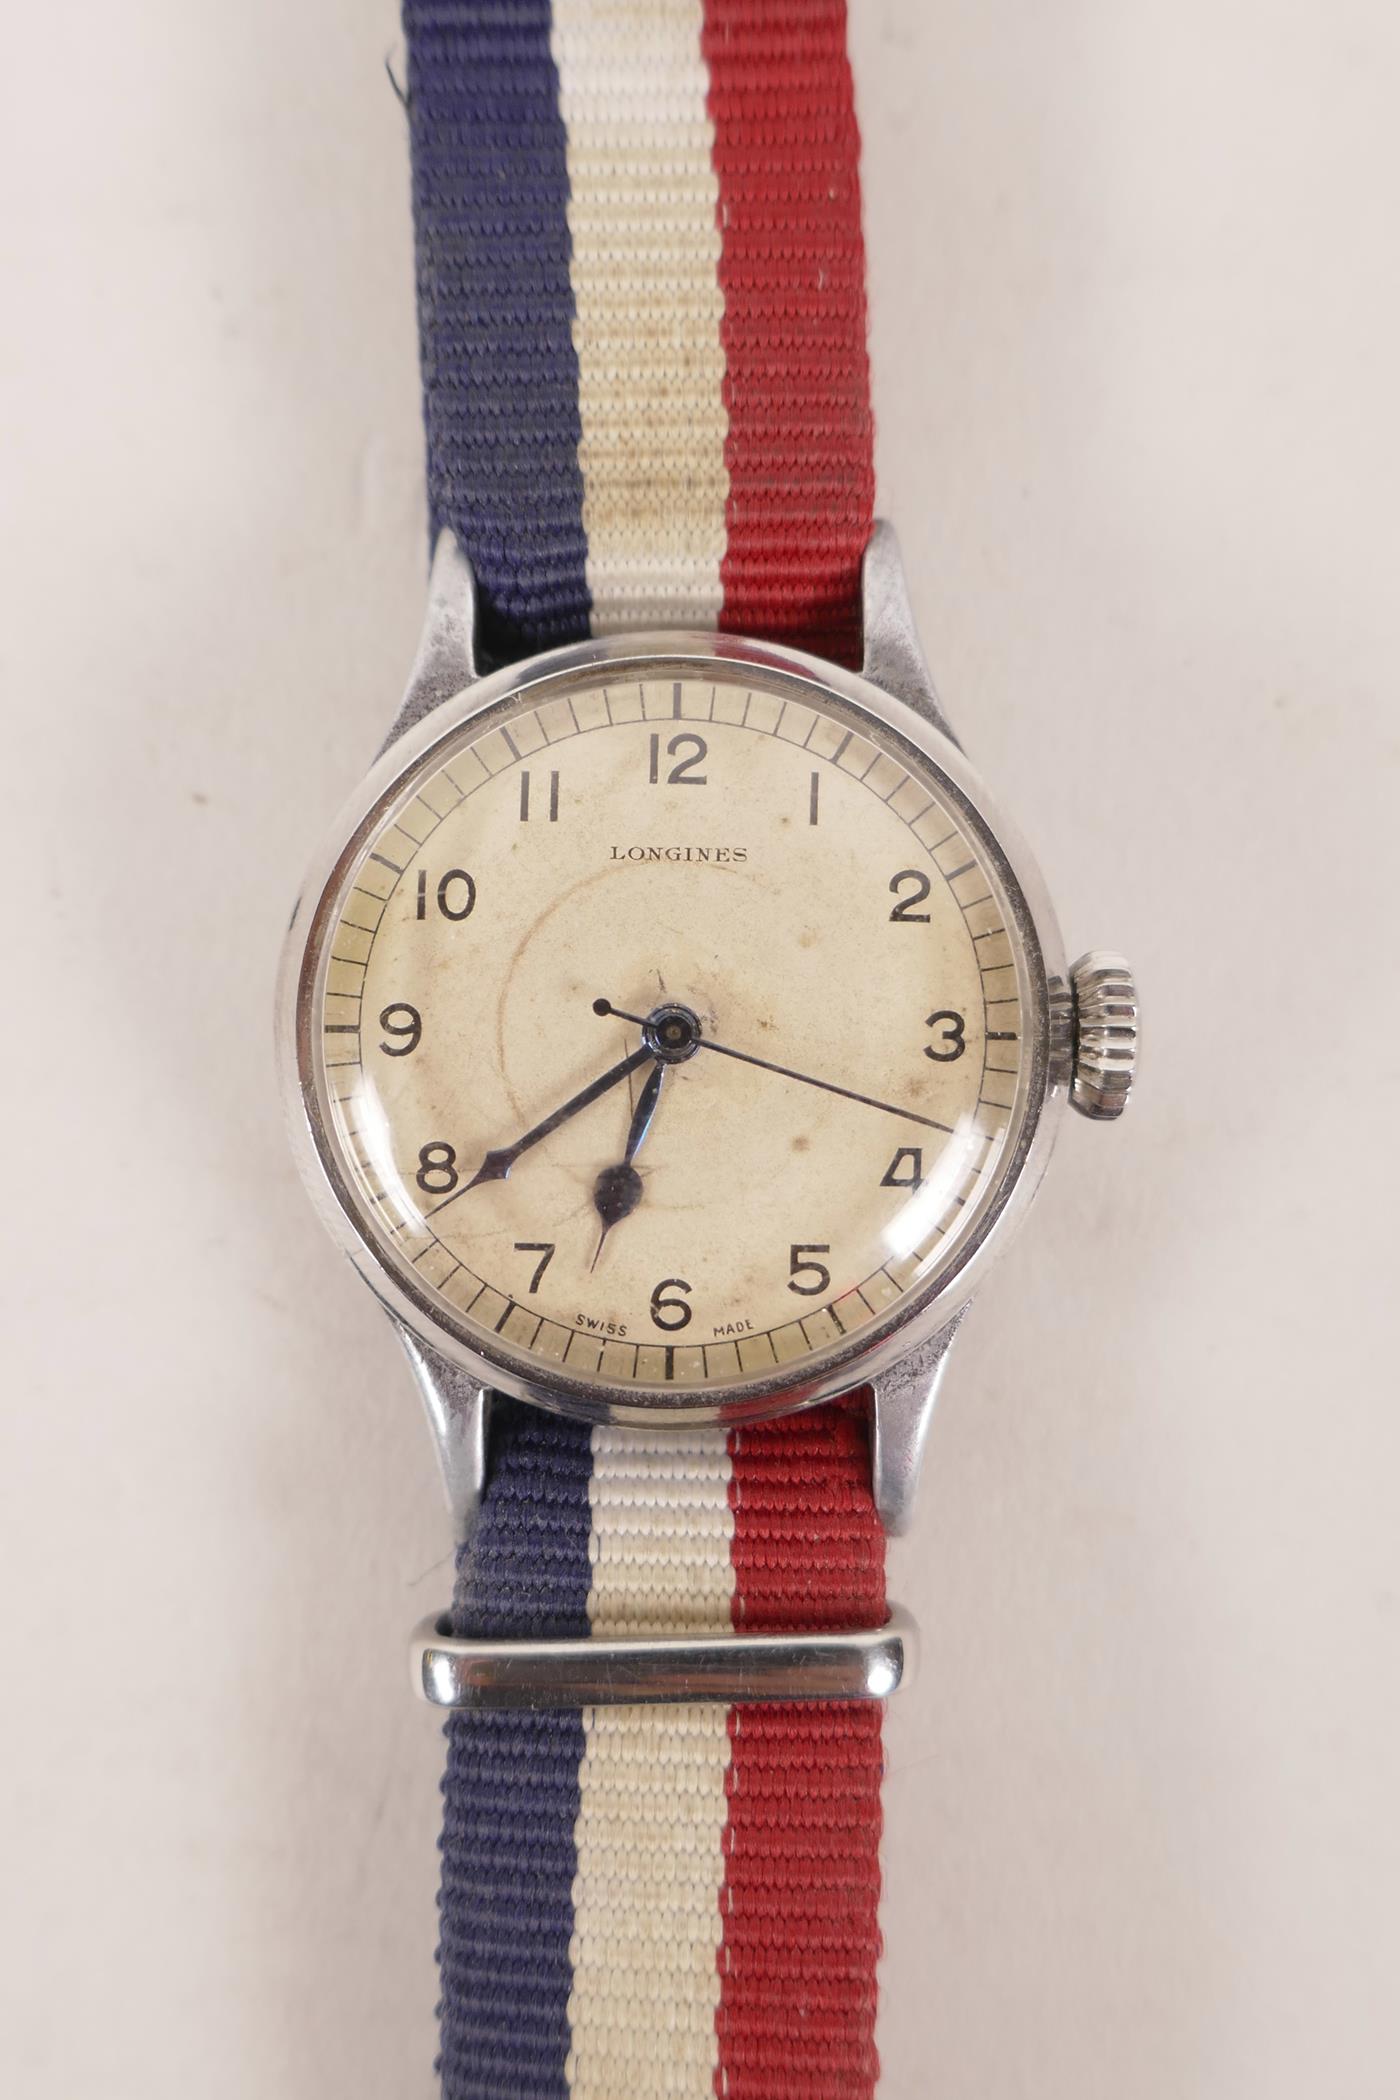 A Longines 6B159 RAF pilot's/navigator's watch, circa 1942, serial no. 6567509, engraved verso 'AM.